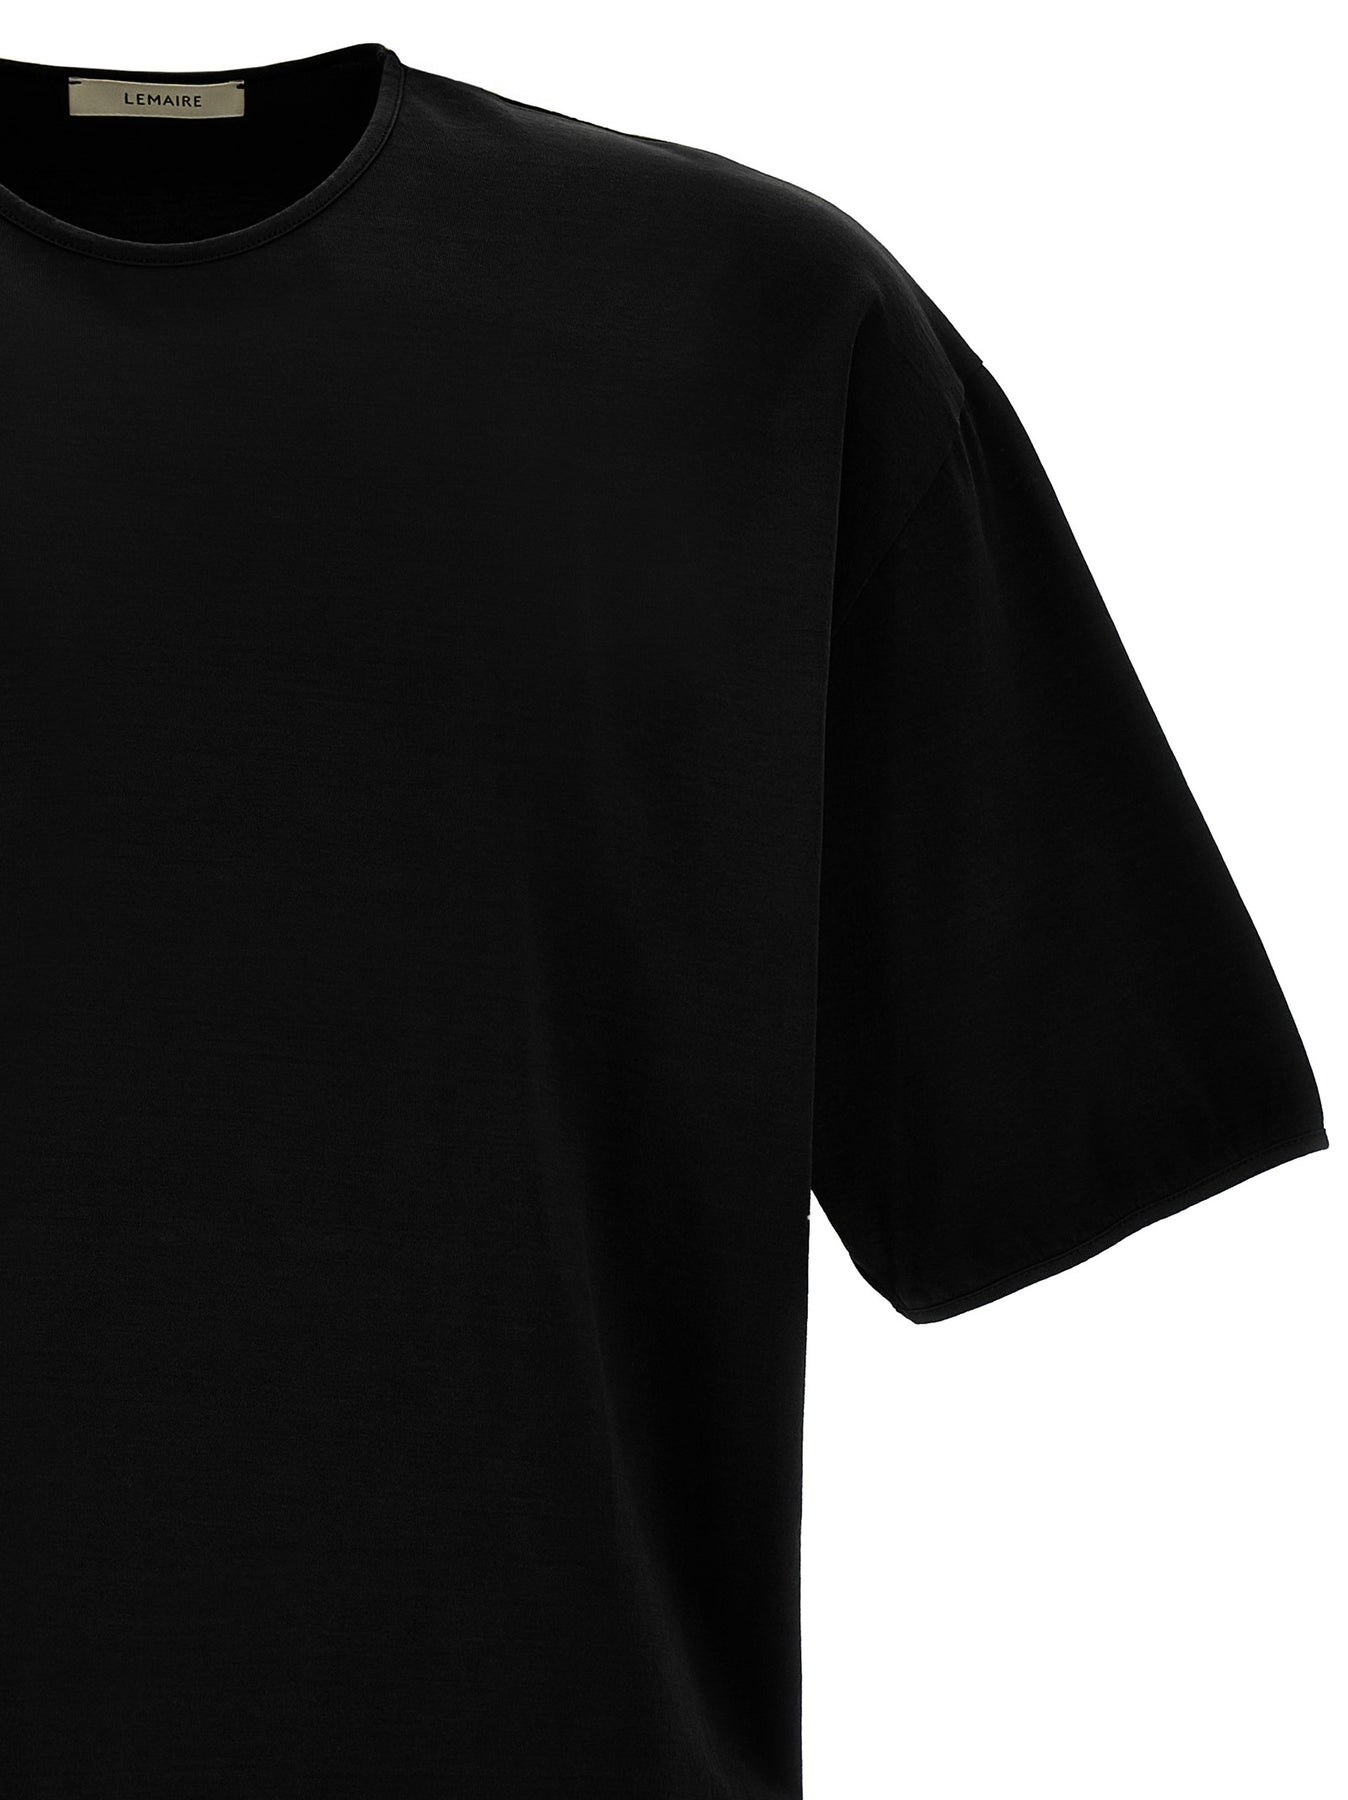 Mercerized Cotton T-Shirt Black - 3